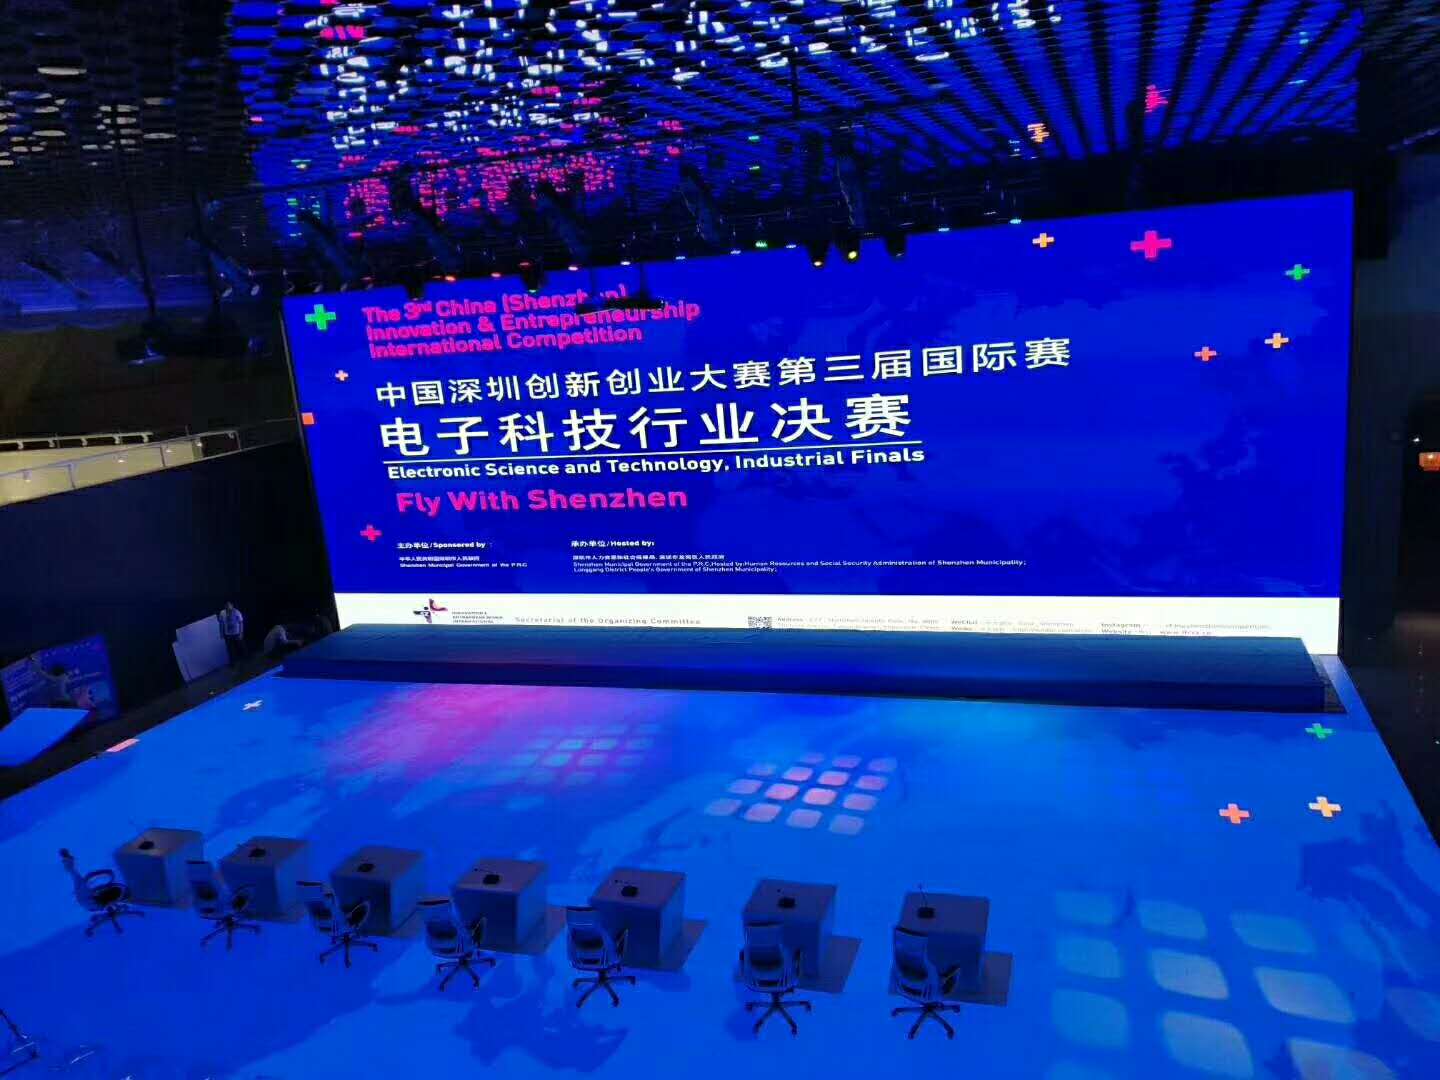 达信雅为中国深圳创新创业大赛第三届国际赛提供翻译服务